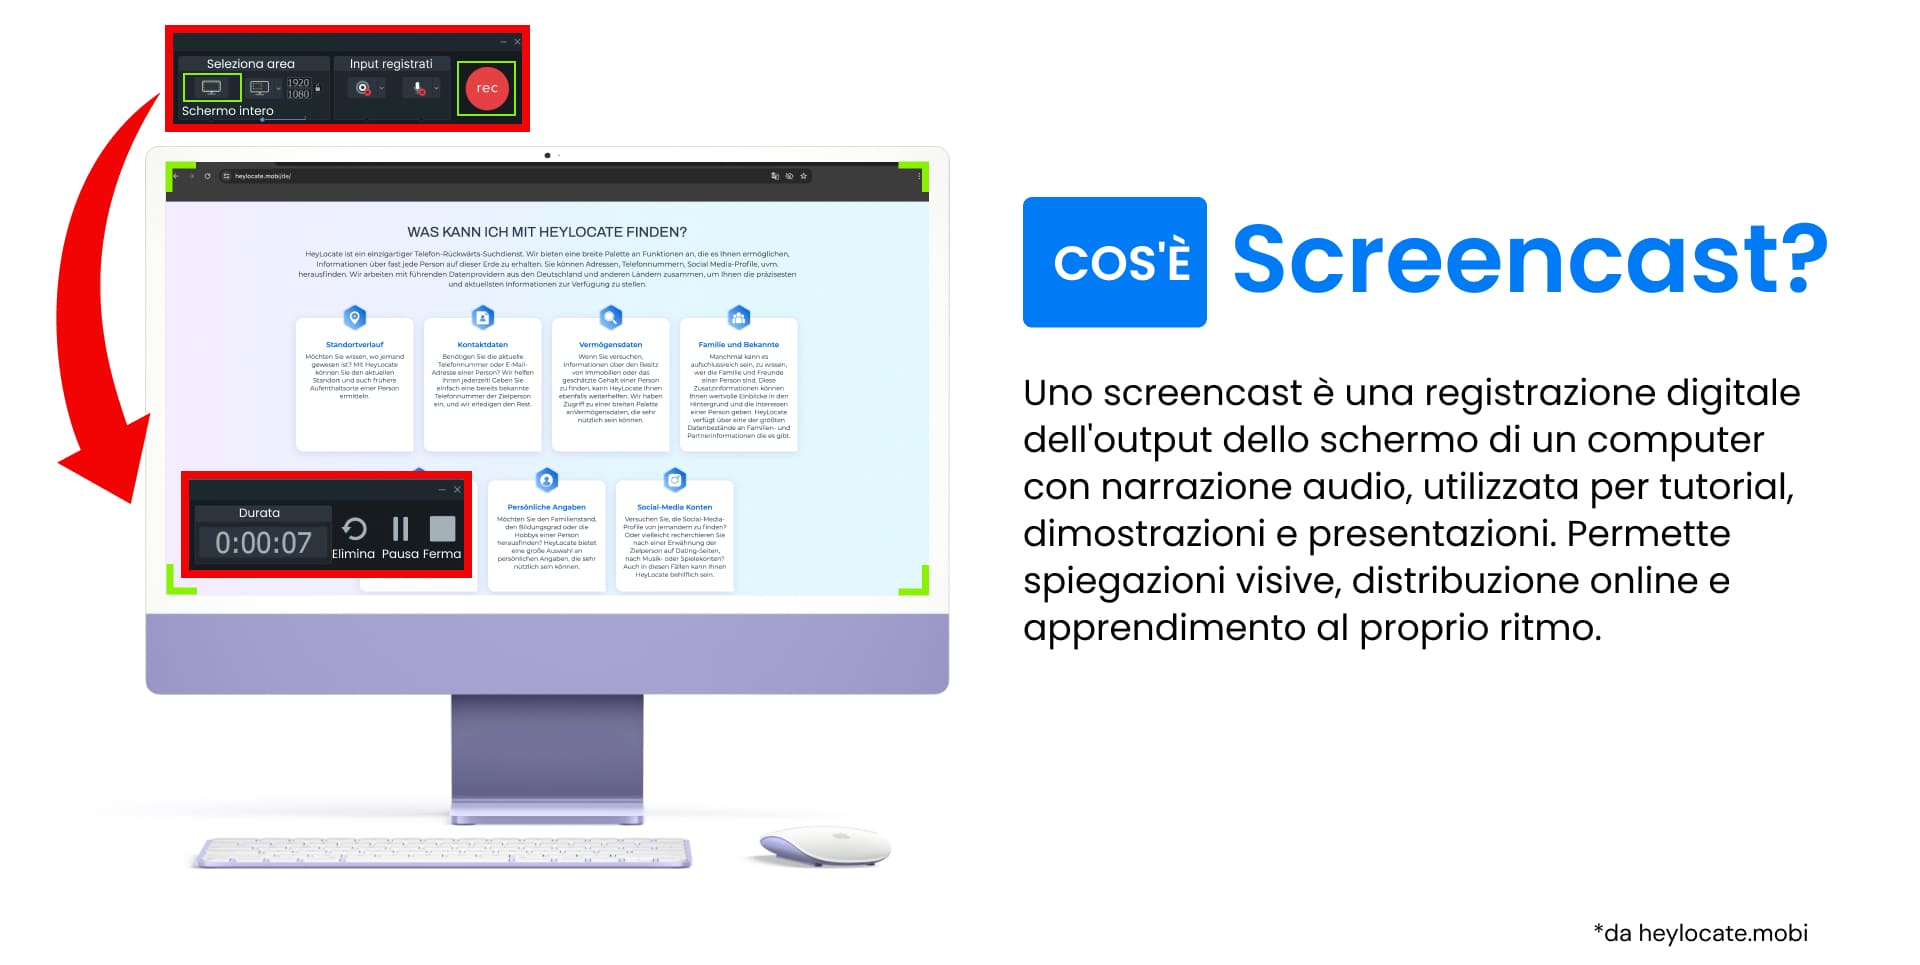 Un'immagine che mostra un computer con l'interfaccia di un'applicazione di screencasting e la definizione di screenshot.